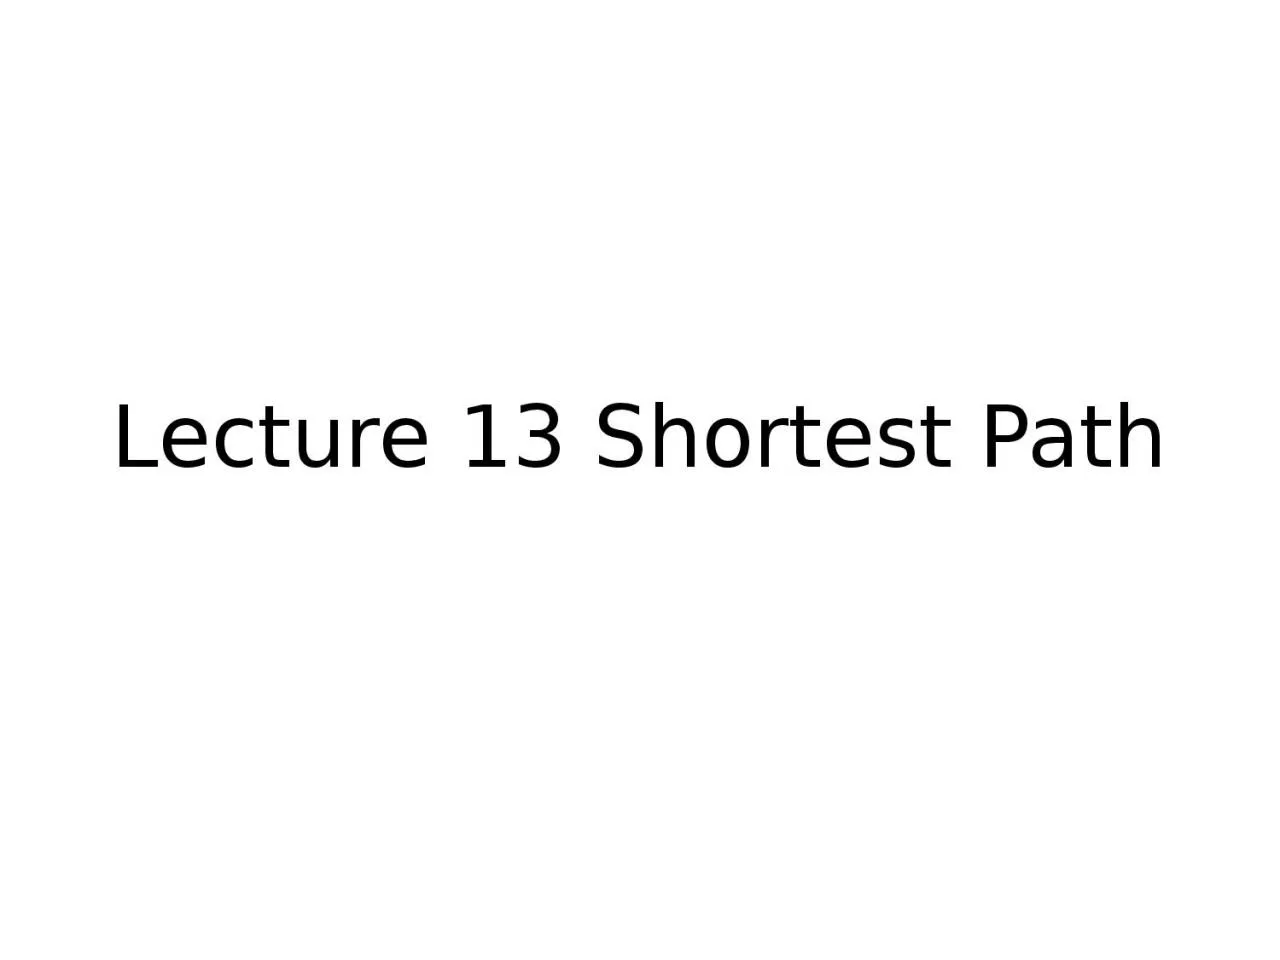 Lecture 13 Shortest Path